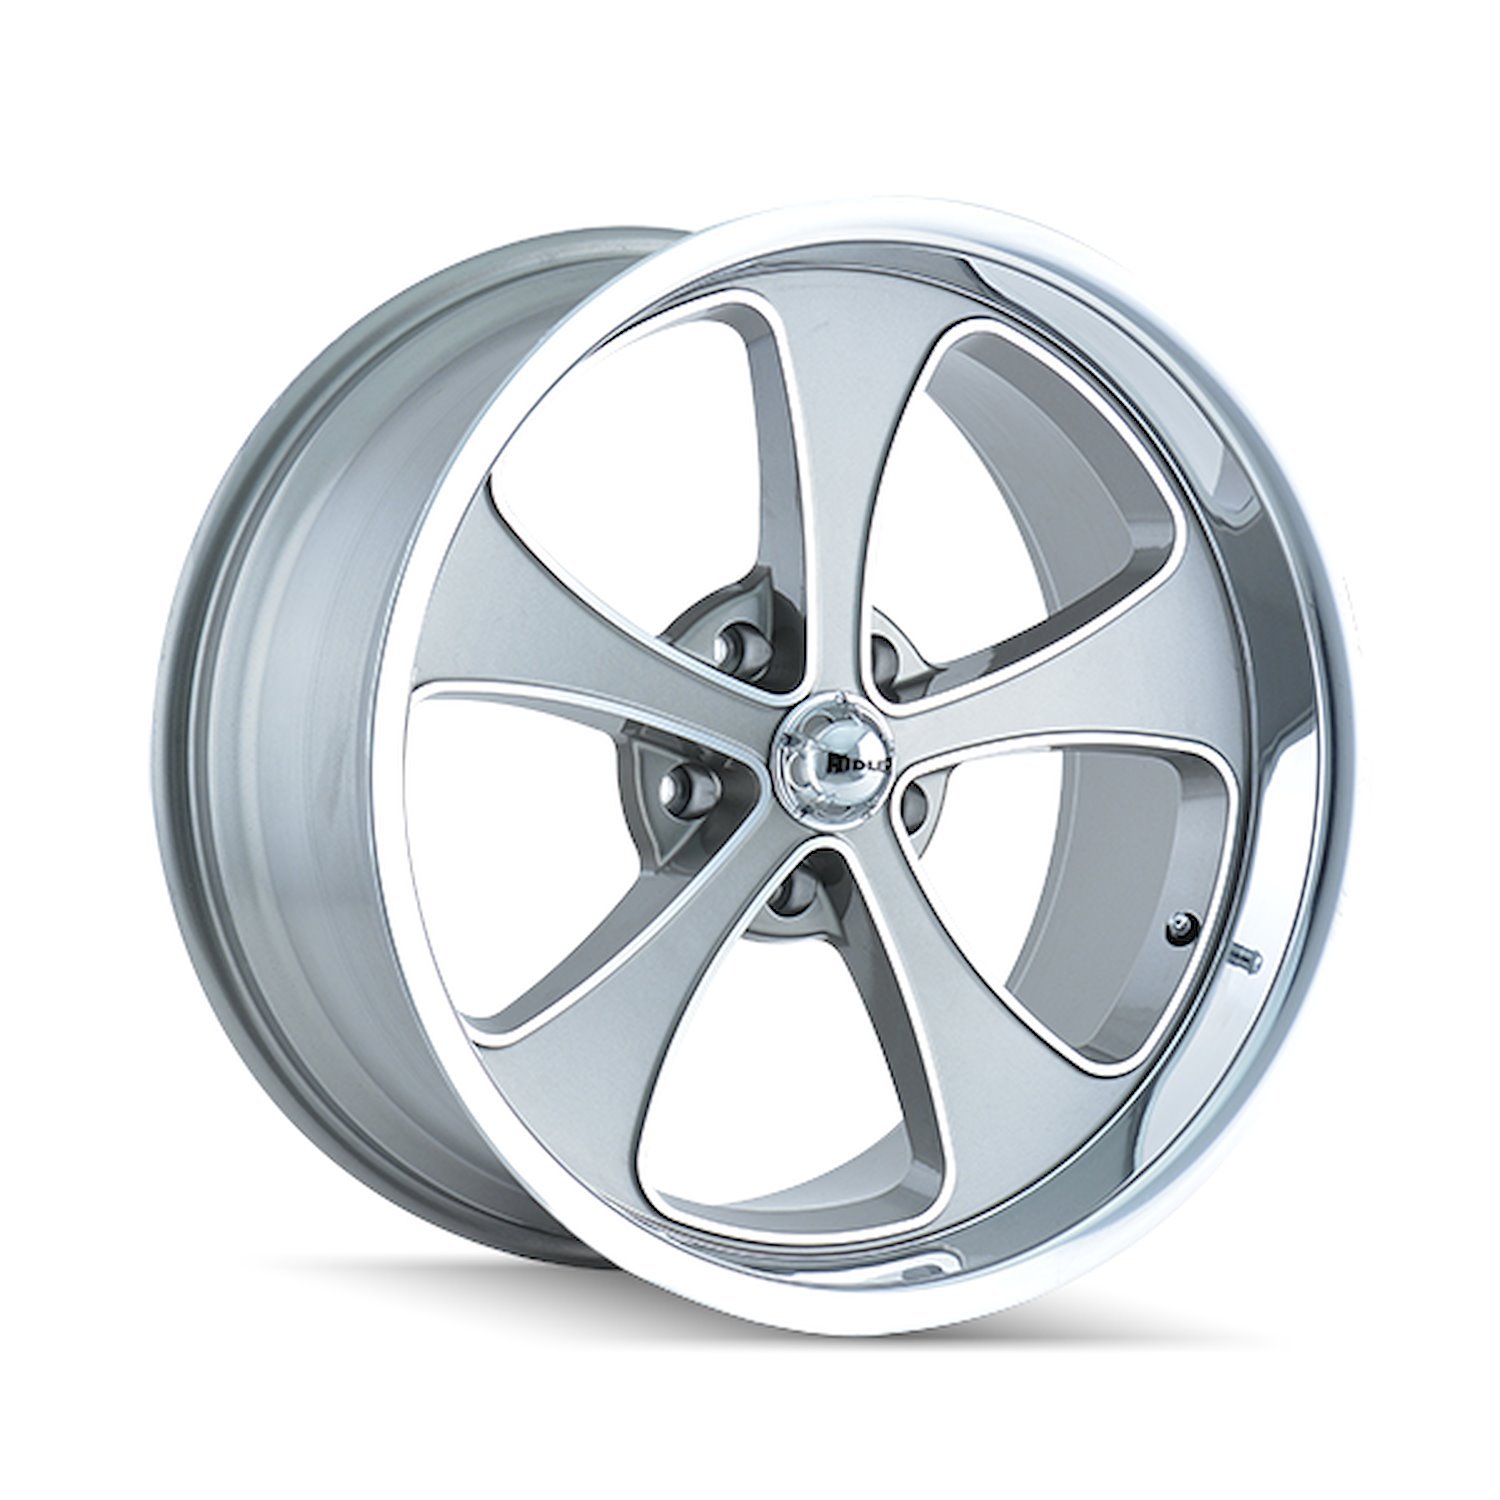 645-2873GP 645-Series Wheel [Size: 20" x 8.50"] Gloss Grey Machined/Polished Finish